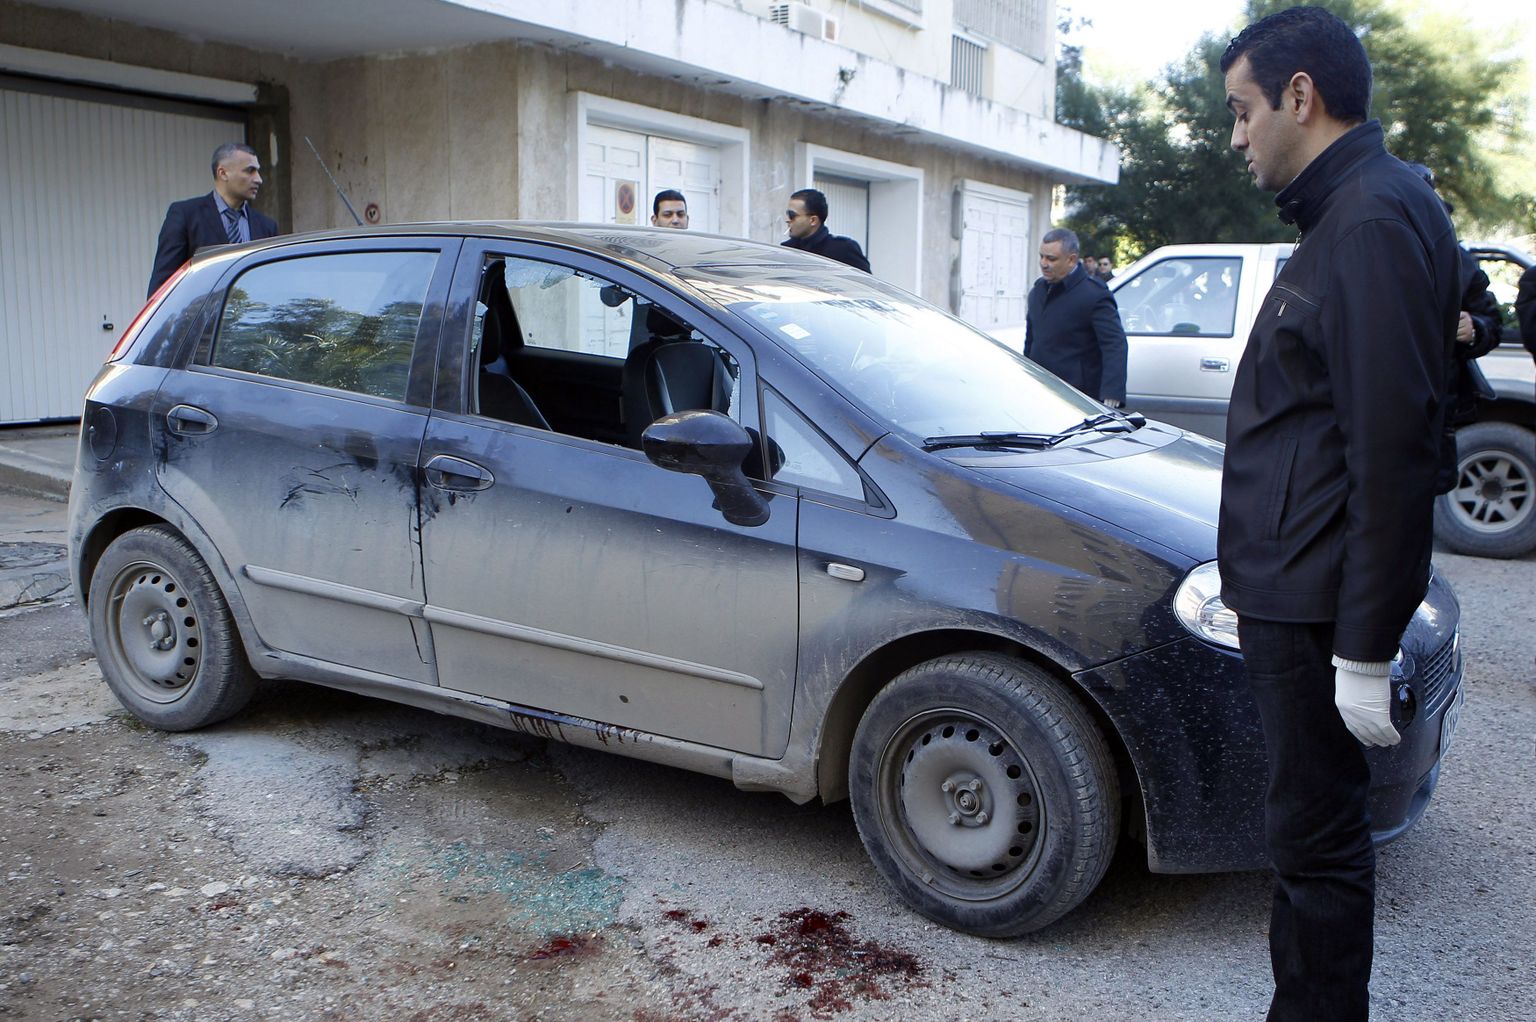 Tuneesia kohtumeditsiini ekspert vaatab opositsionääri Shokri Belaidi verist autot Tunises.